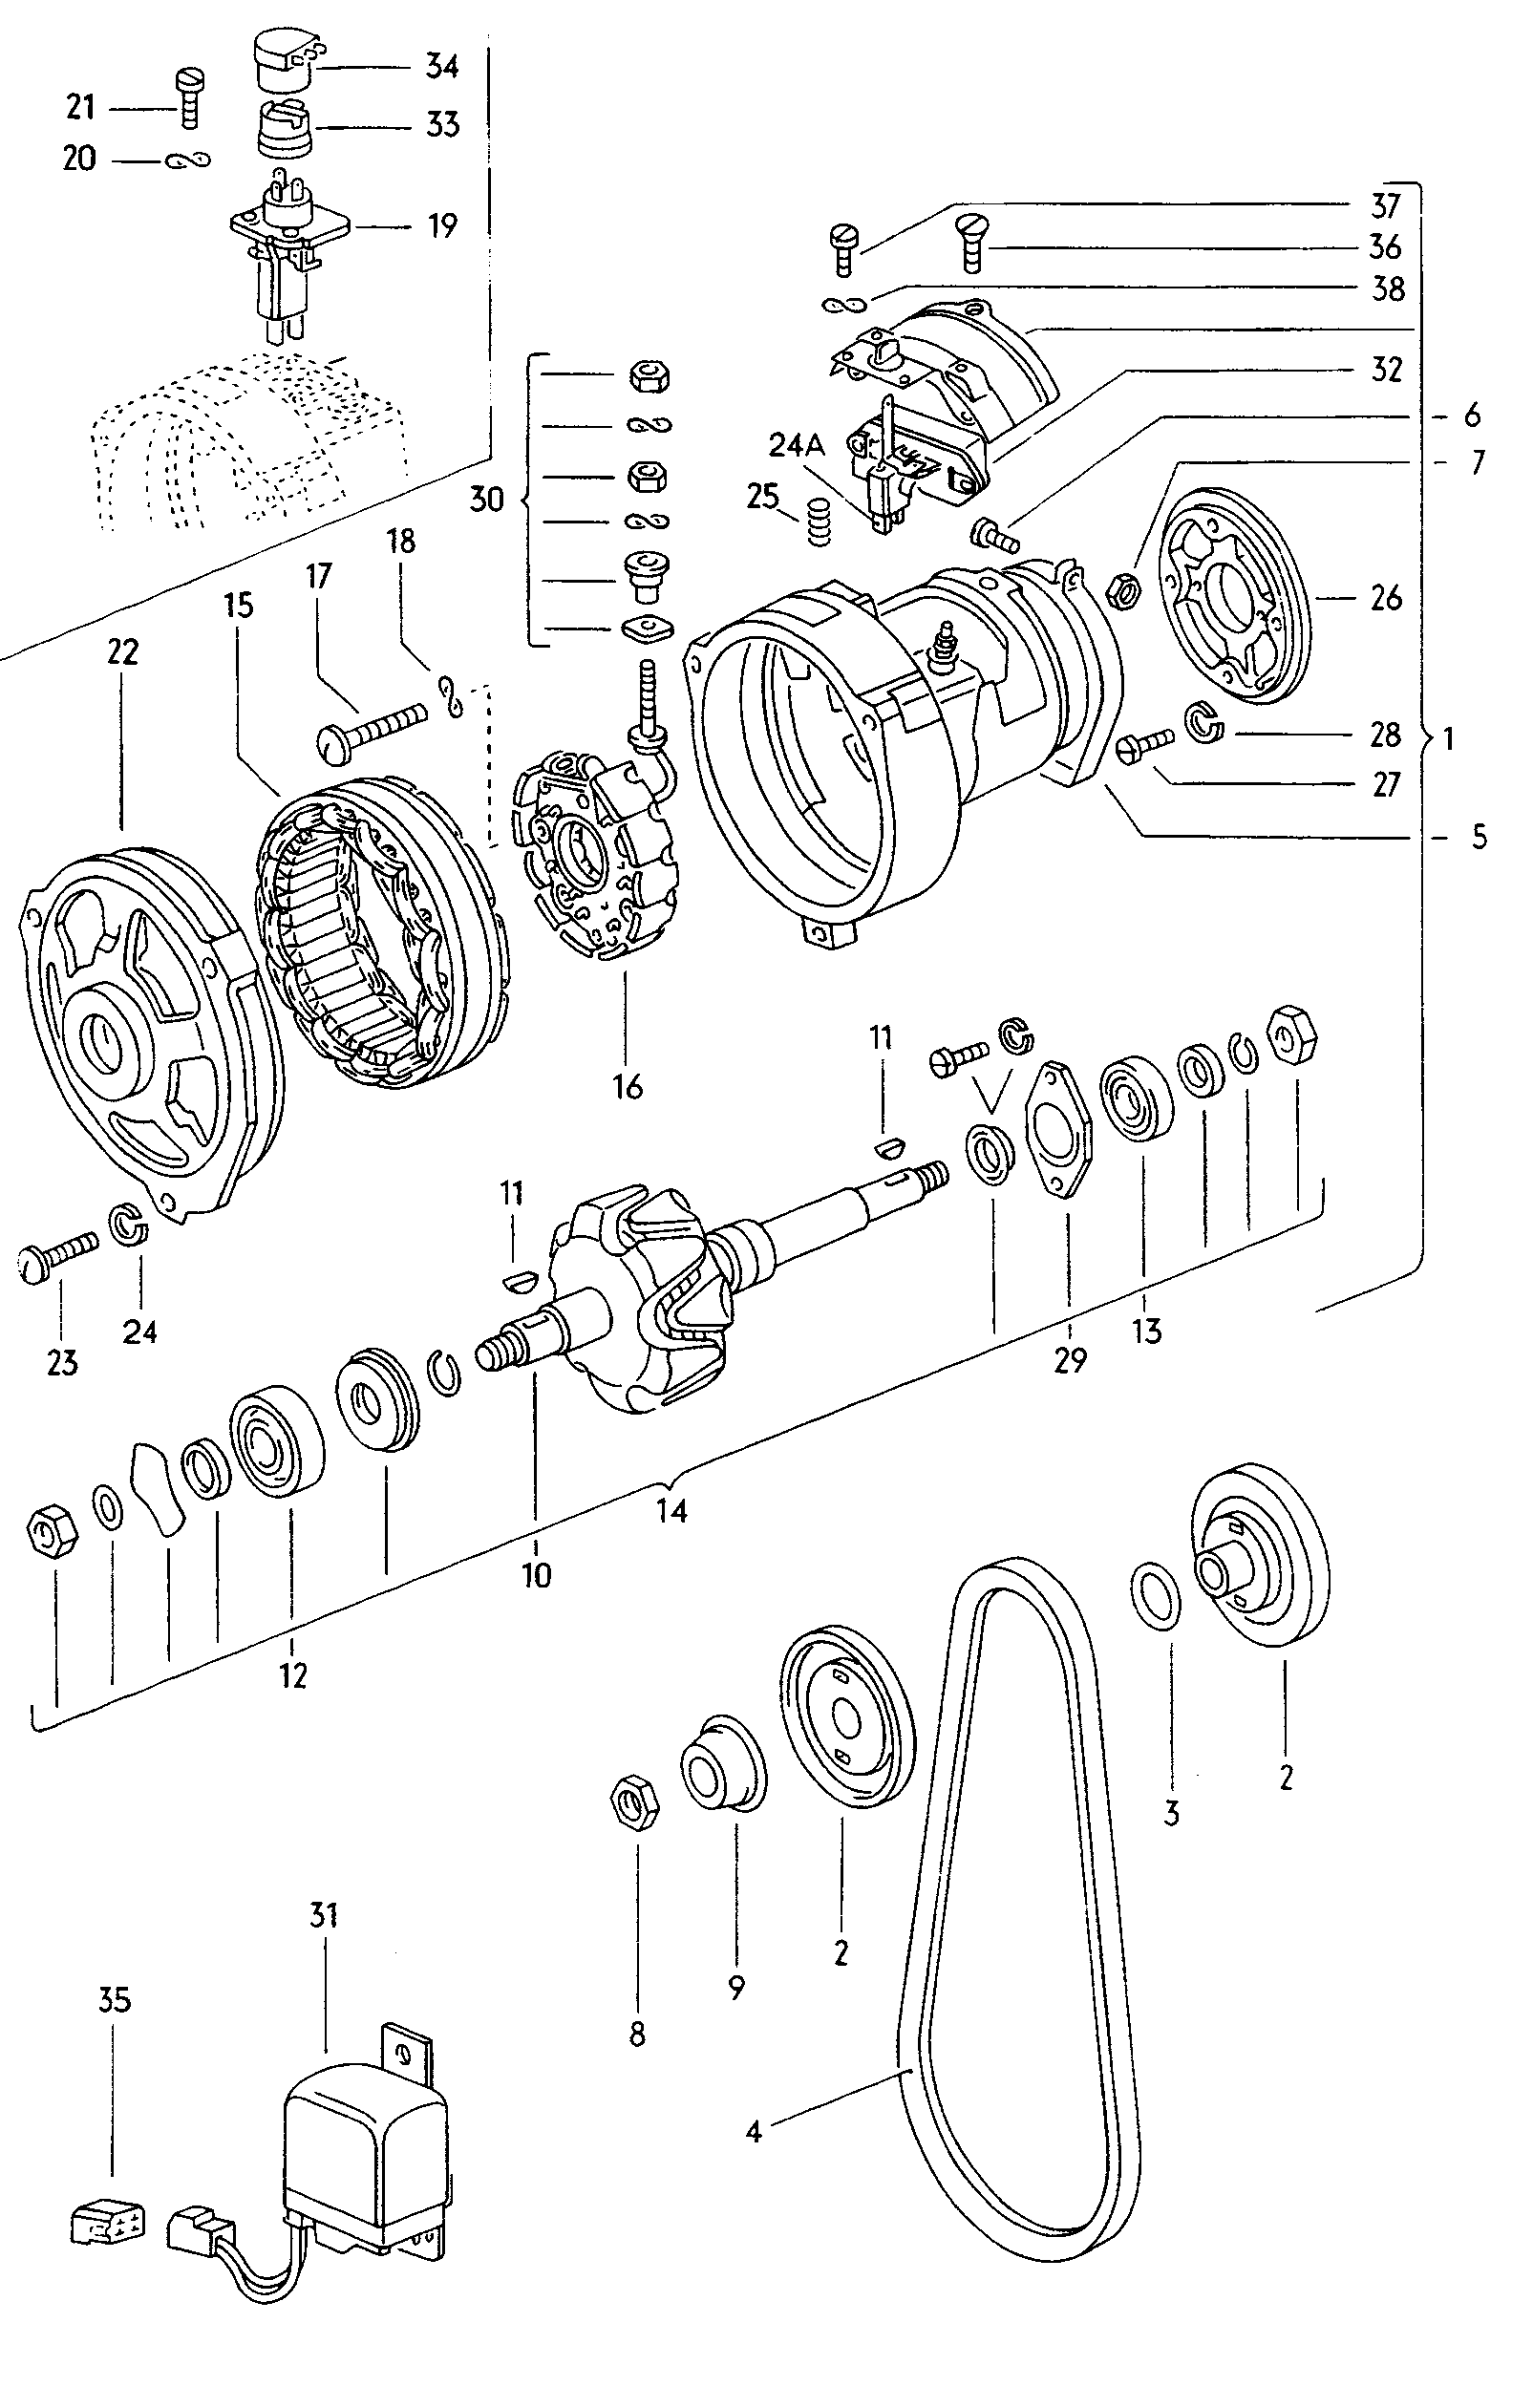 Drehstromgenerator und
Einzelteile - Typ 2/syncro(T2)  